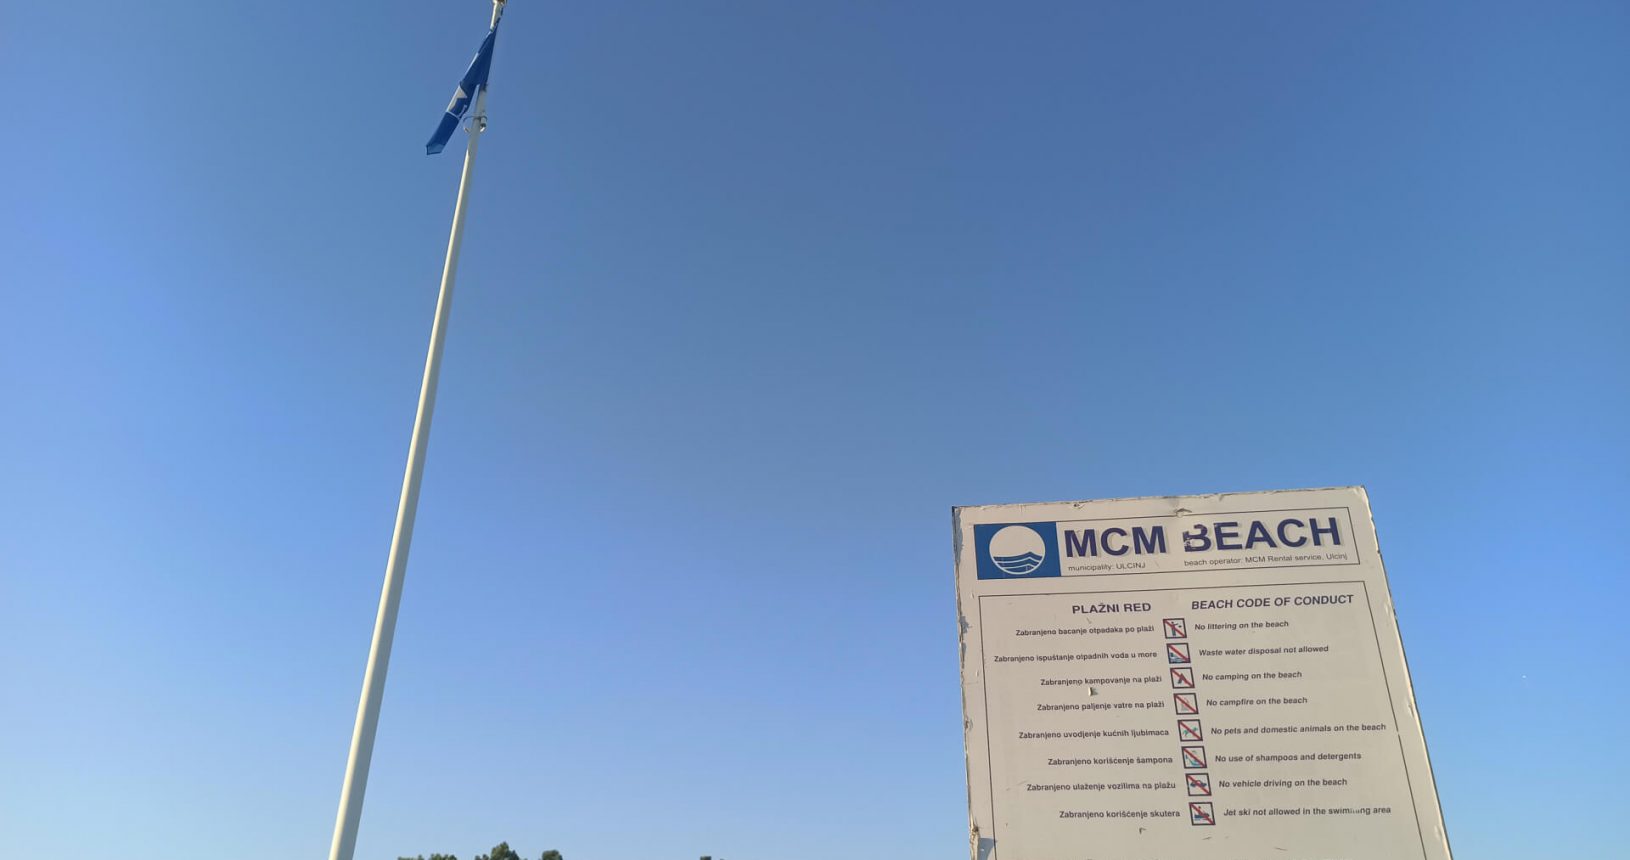 MCM Beach blue flag